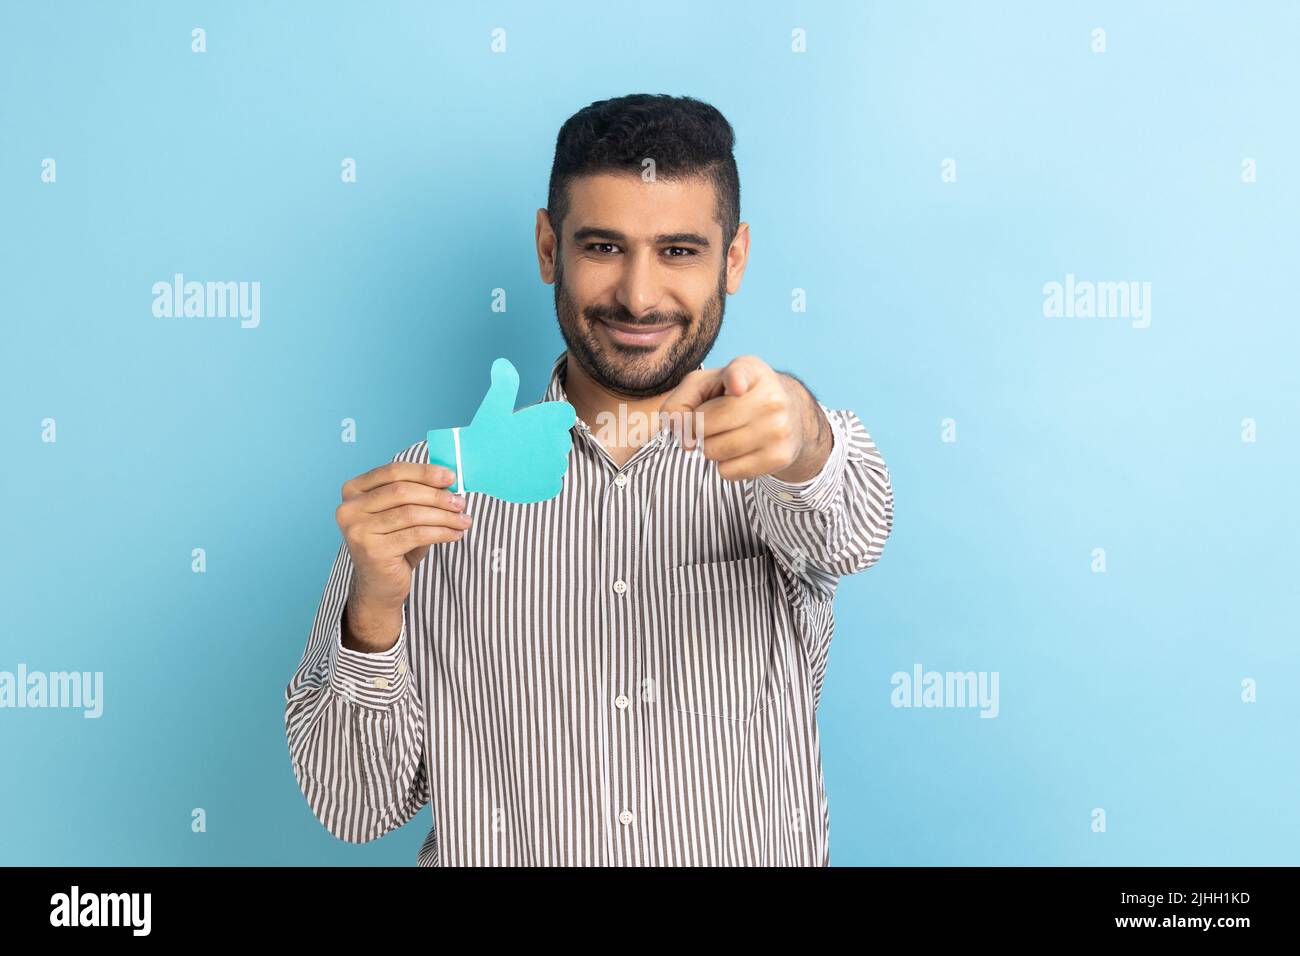 Bärtiger Geschäftsmann hält und zeigt ein Schild in Papierform, zeigt mit einem dutzenden Lächeln auf die Kamera und trägt ein gestreiftes Hemd. Innenaufnahme des Studios isoliert auf blauem Hintergrund. Stockfoto